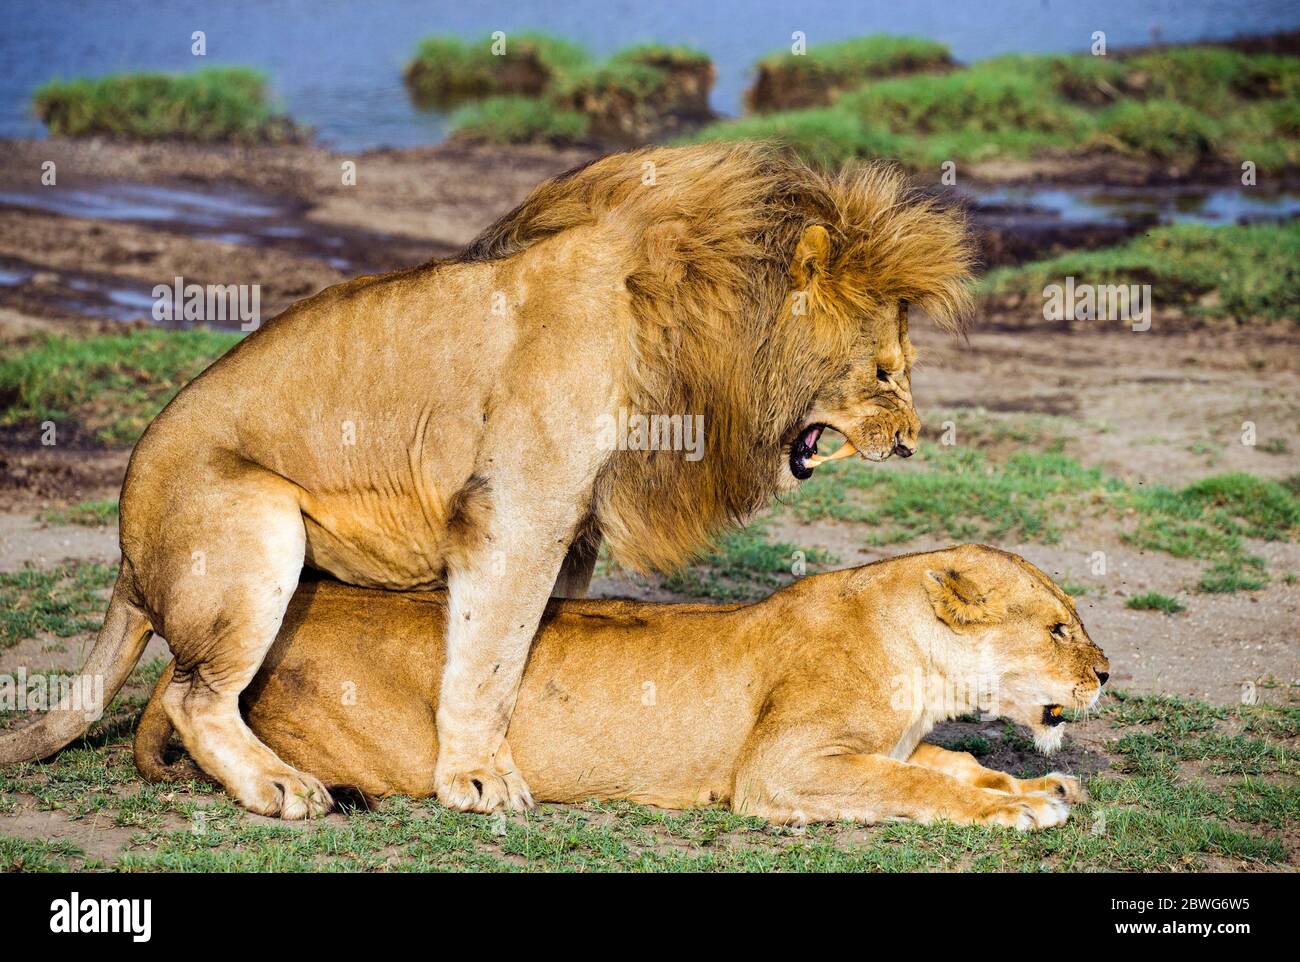 Lions (Panthera leo), Parc national du Serengeti, Tanzanie, Afrique Banque D'Images